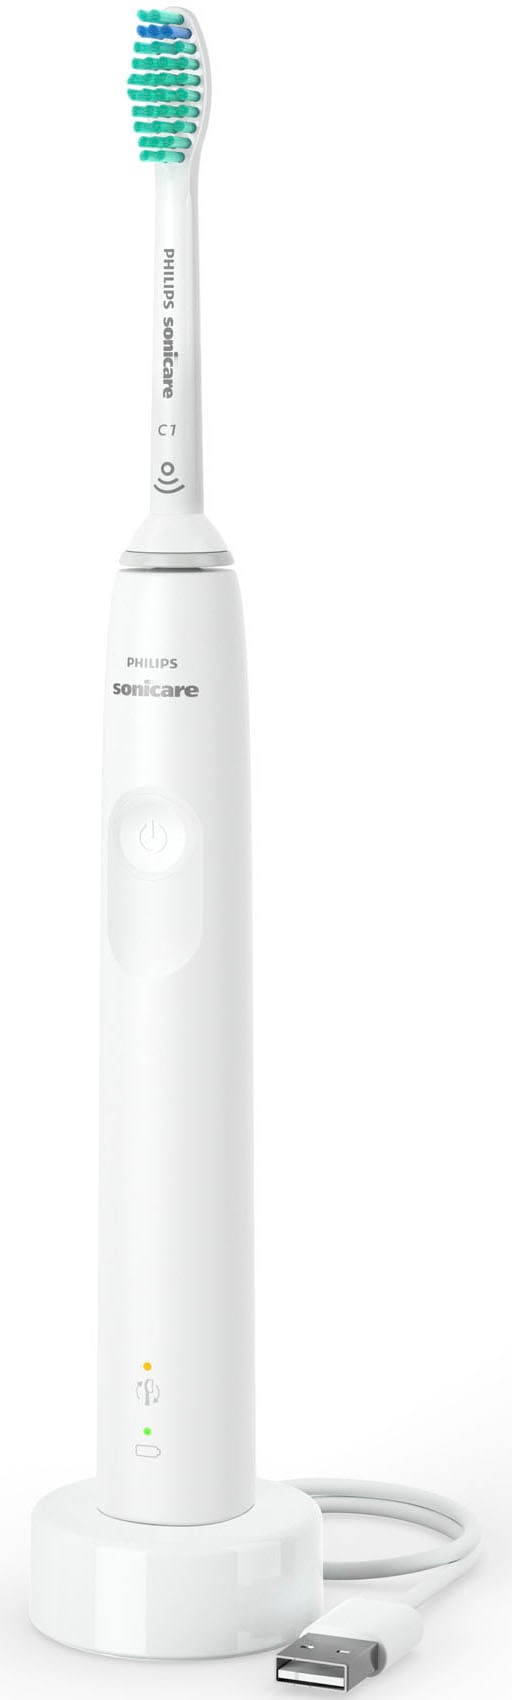 Philips Sonicare Elektrische Zahnbürste »Series 3100 HX3673«, 1 St. Aufsteckbürsten, mit Schalltechnologie, 4-Quadranten-Timer und 2-Minuten-Timer